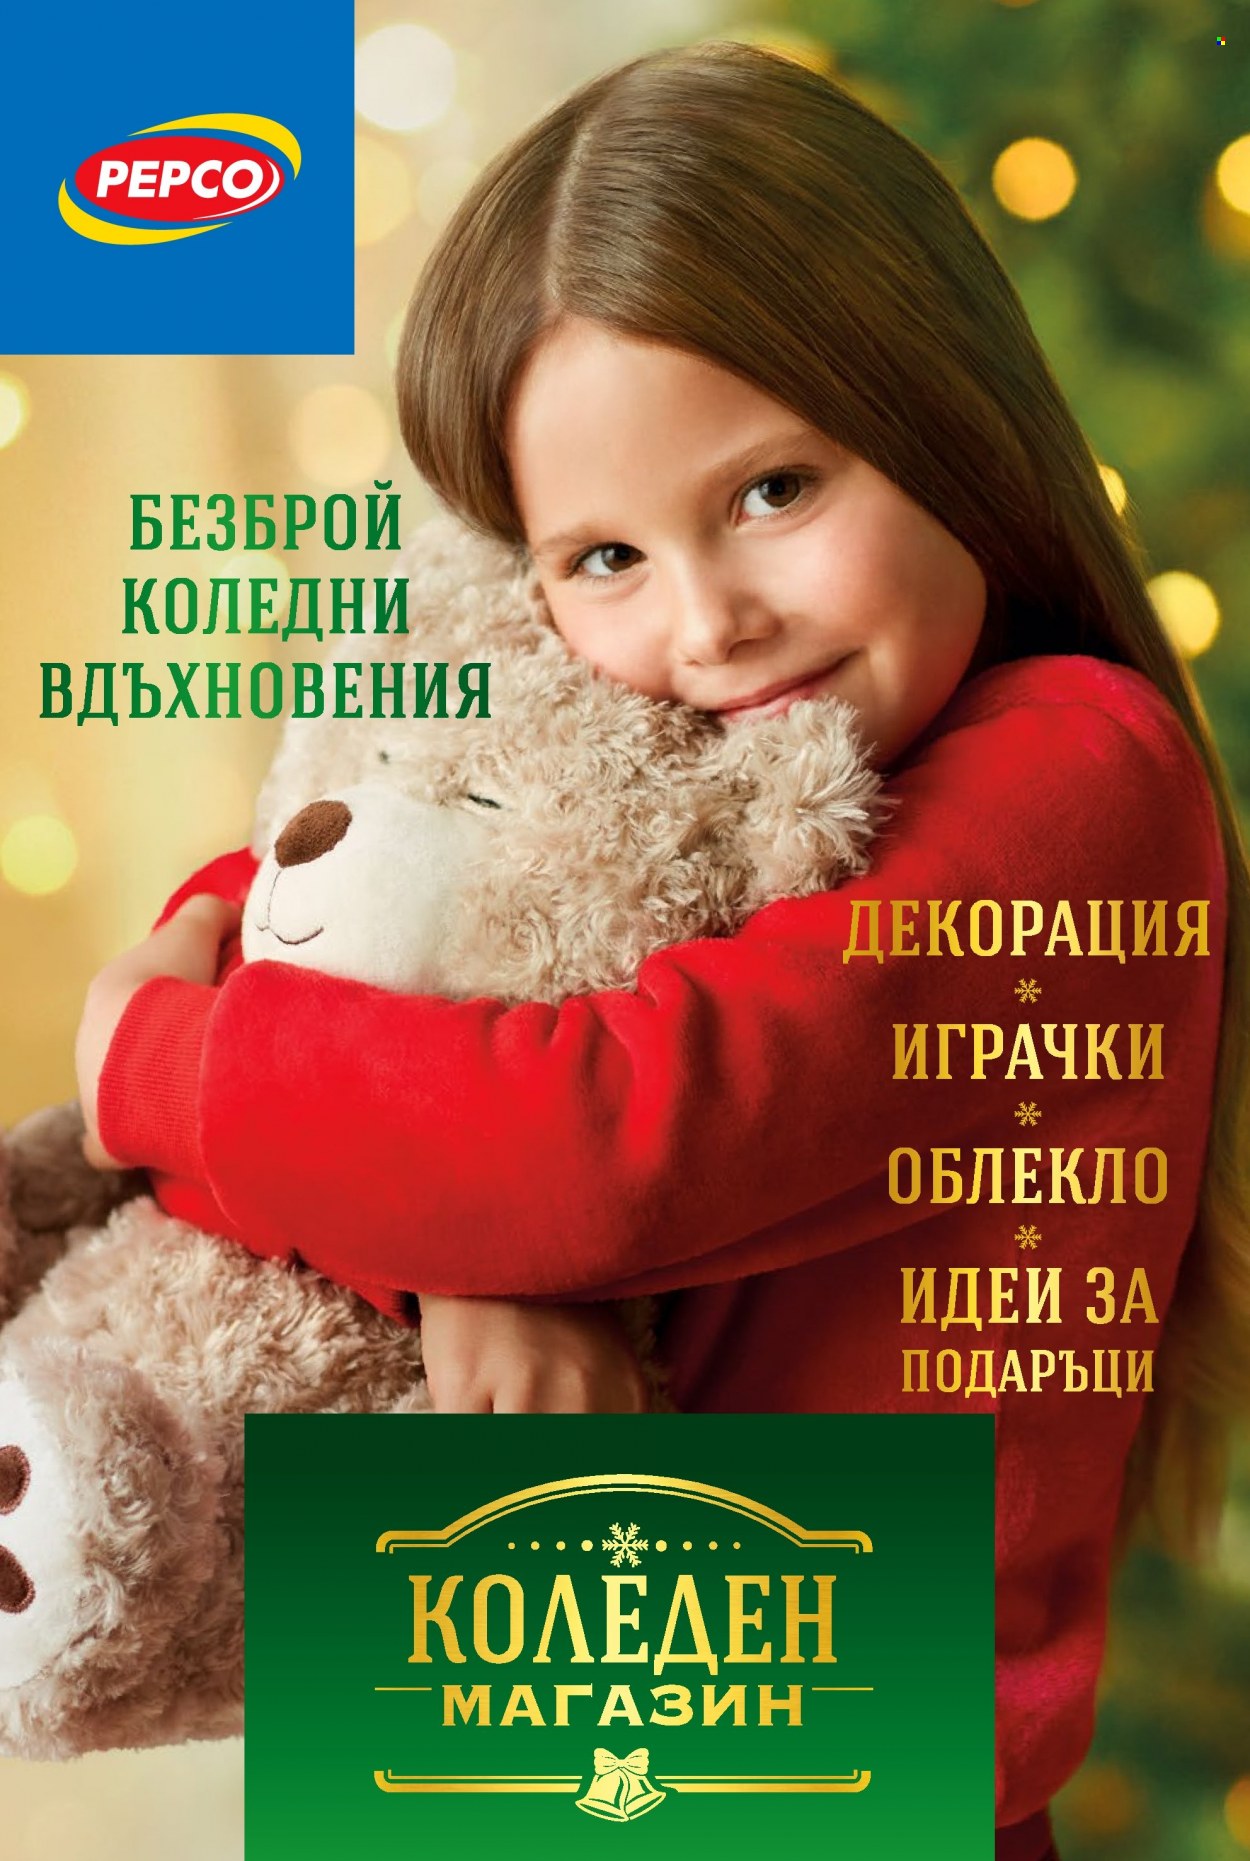 Брошура на Pepco - 04.11.2021 - 24.12.2021 - Продавани продукти - играчки. Страница 1.